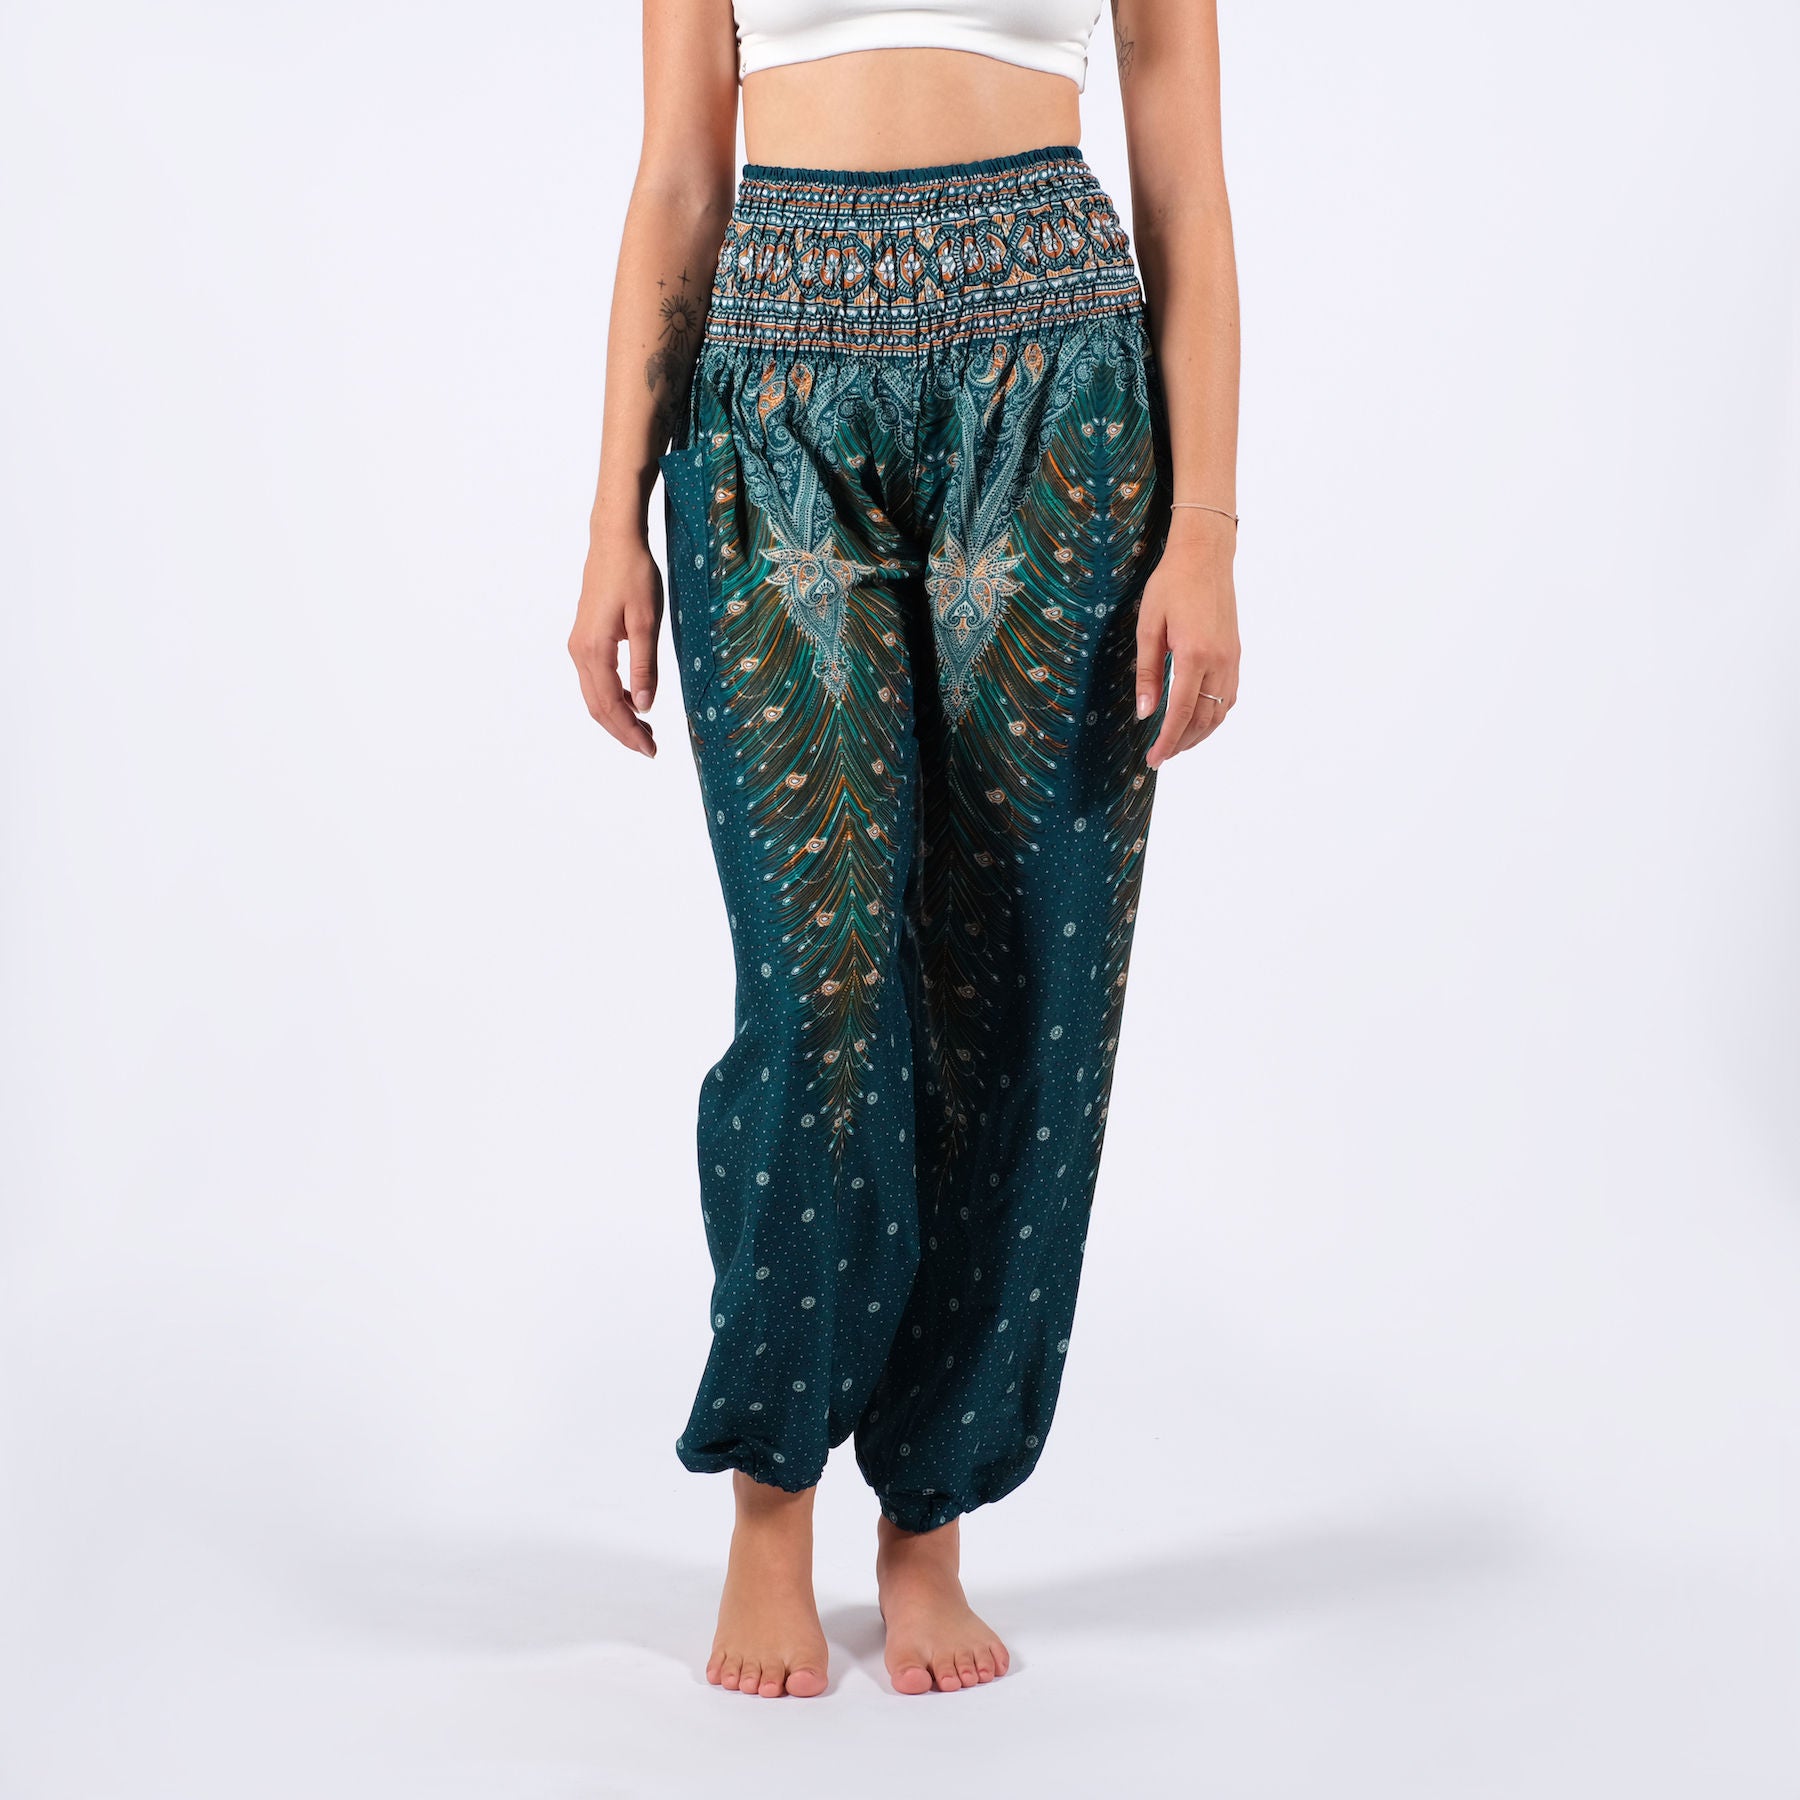 Pantalon de yoga harem Plume turquoise